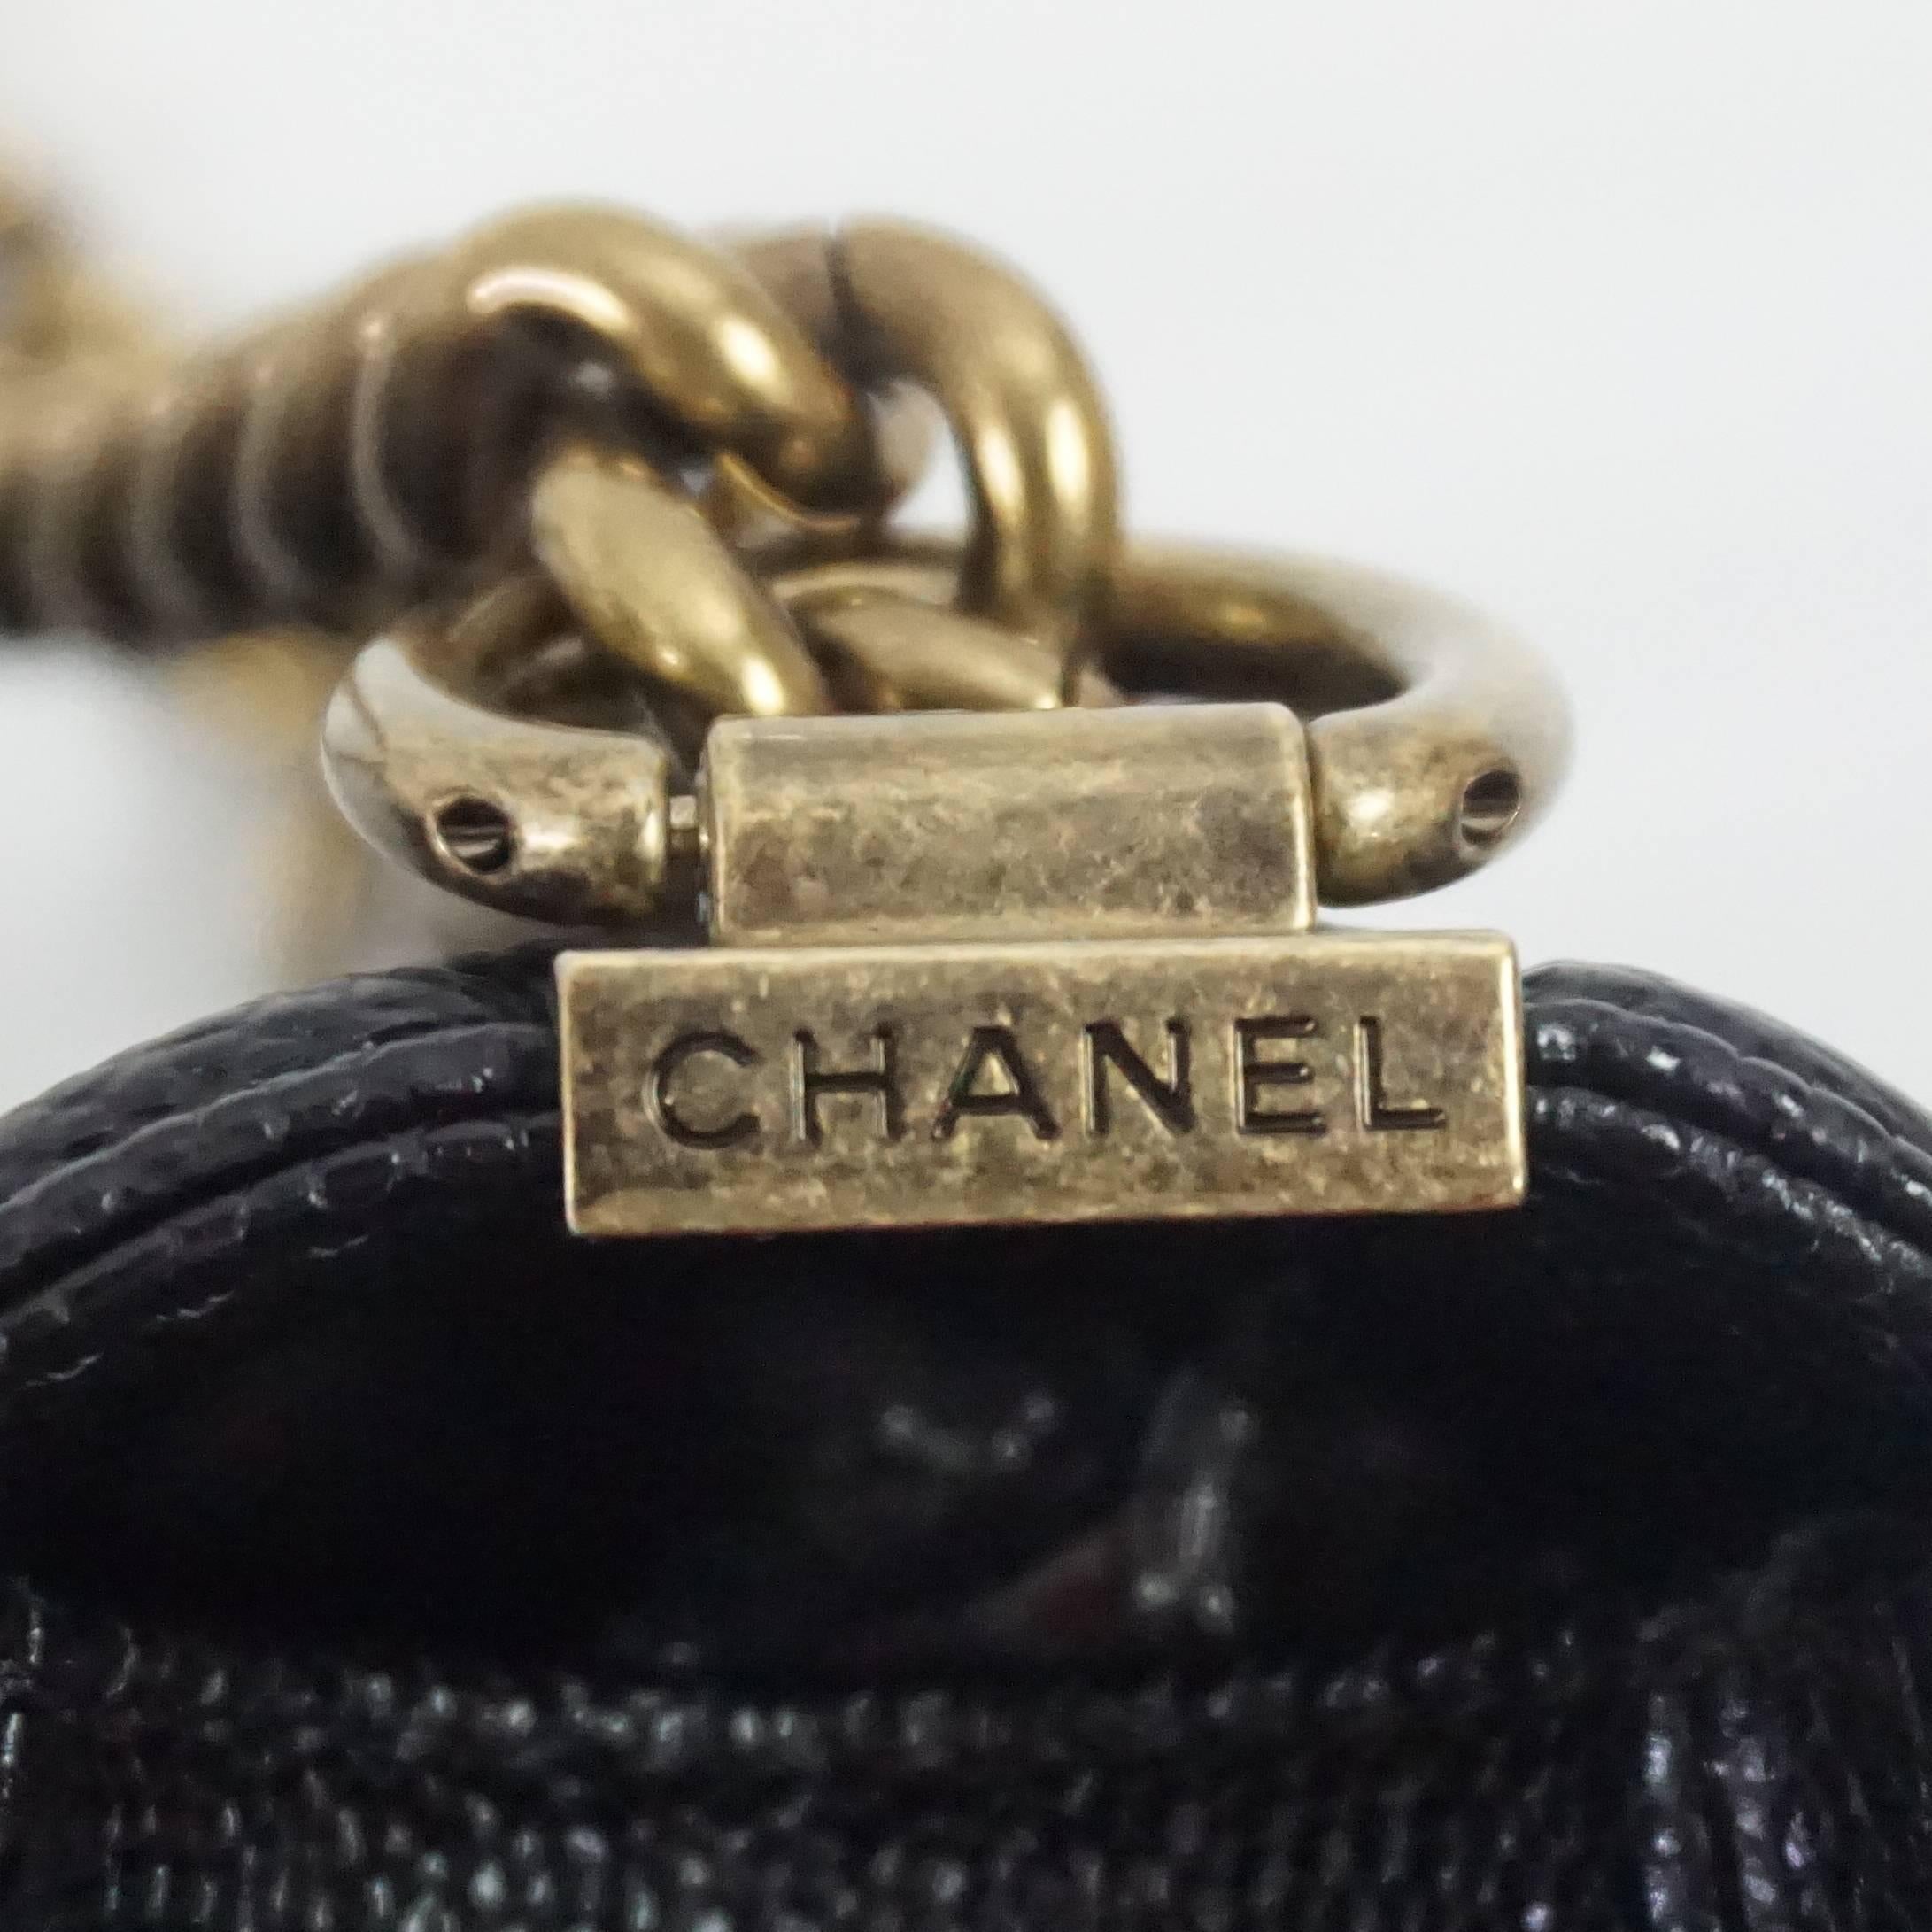 Chanel Black Caviar Small Boy Bag - GHW - 2014 3